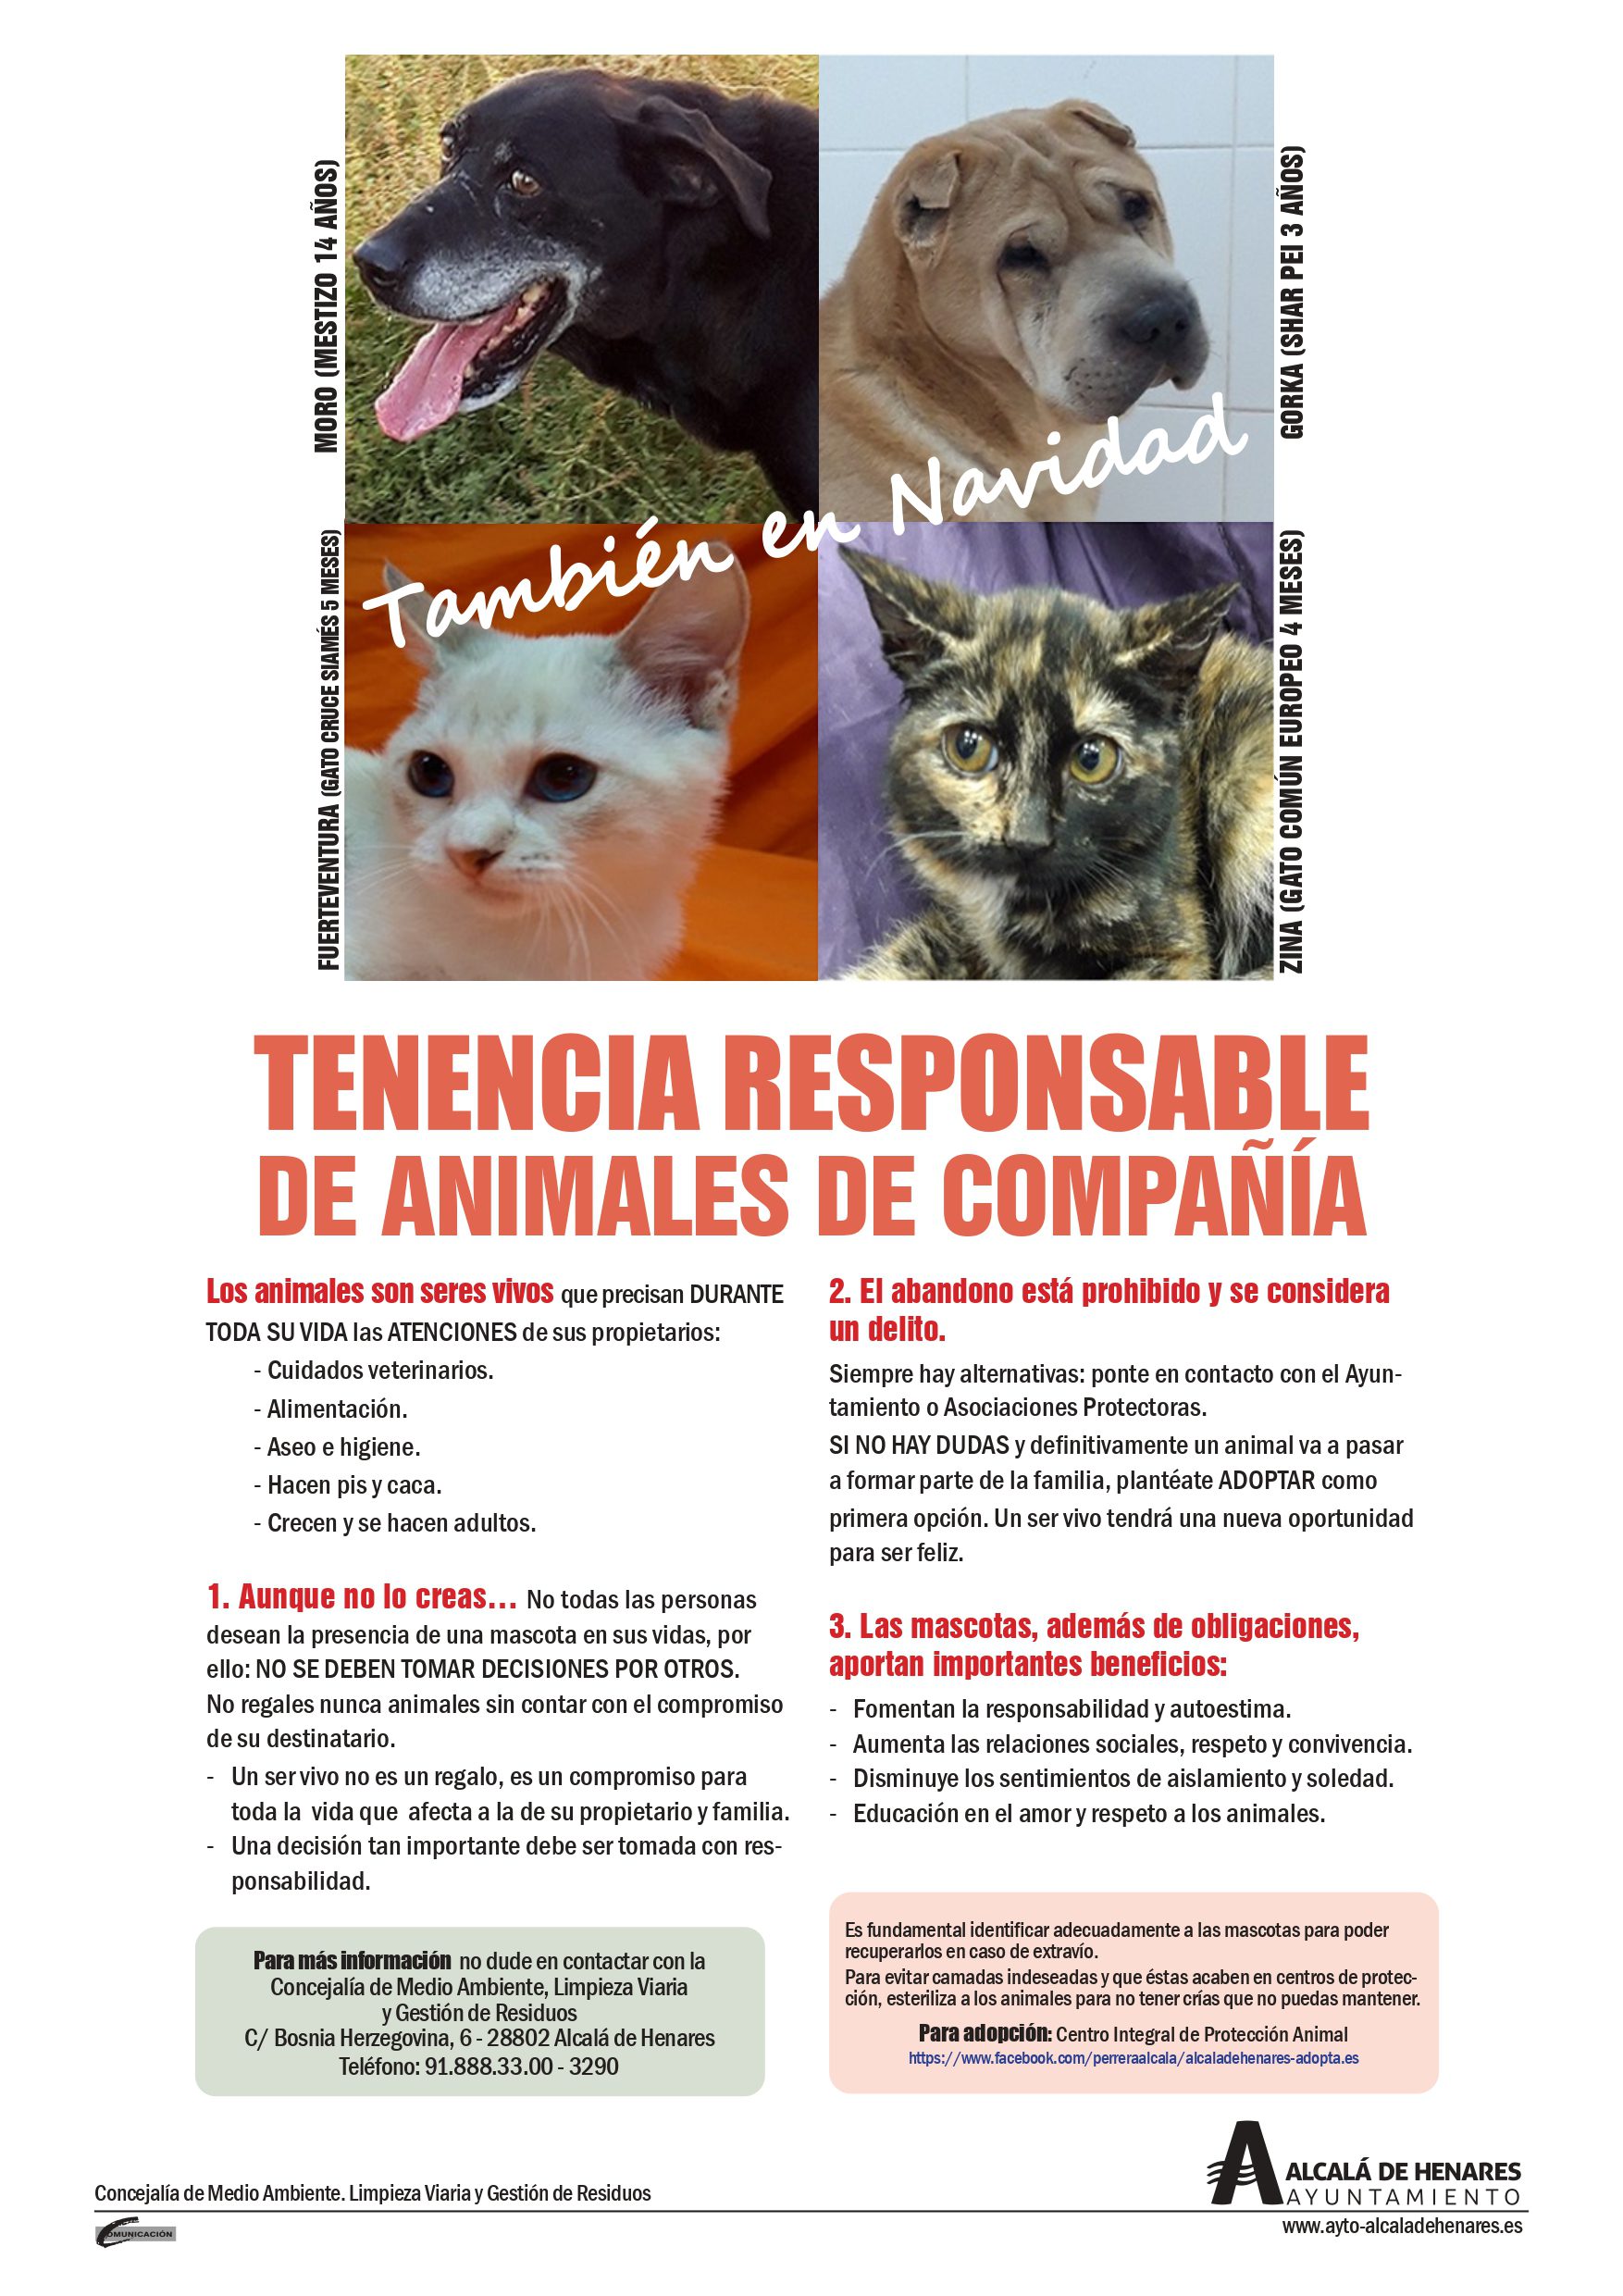 Campaña informativa para la tenencia responsable de animales de compañía: todos contra abandono y por el maltrato - Ayuntamiento de Alcalá de Henares %